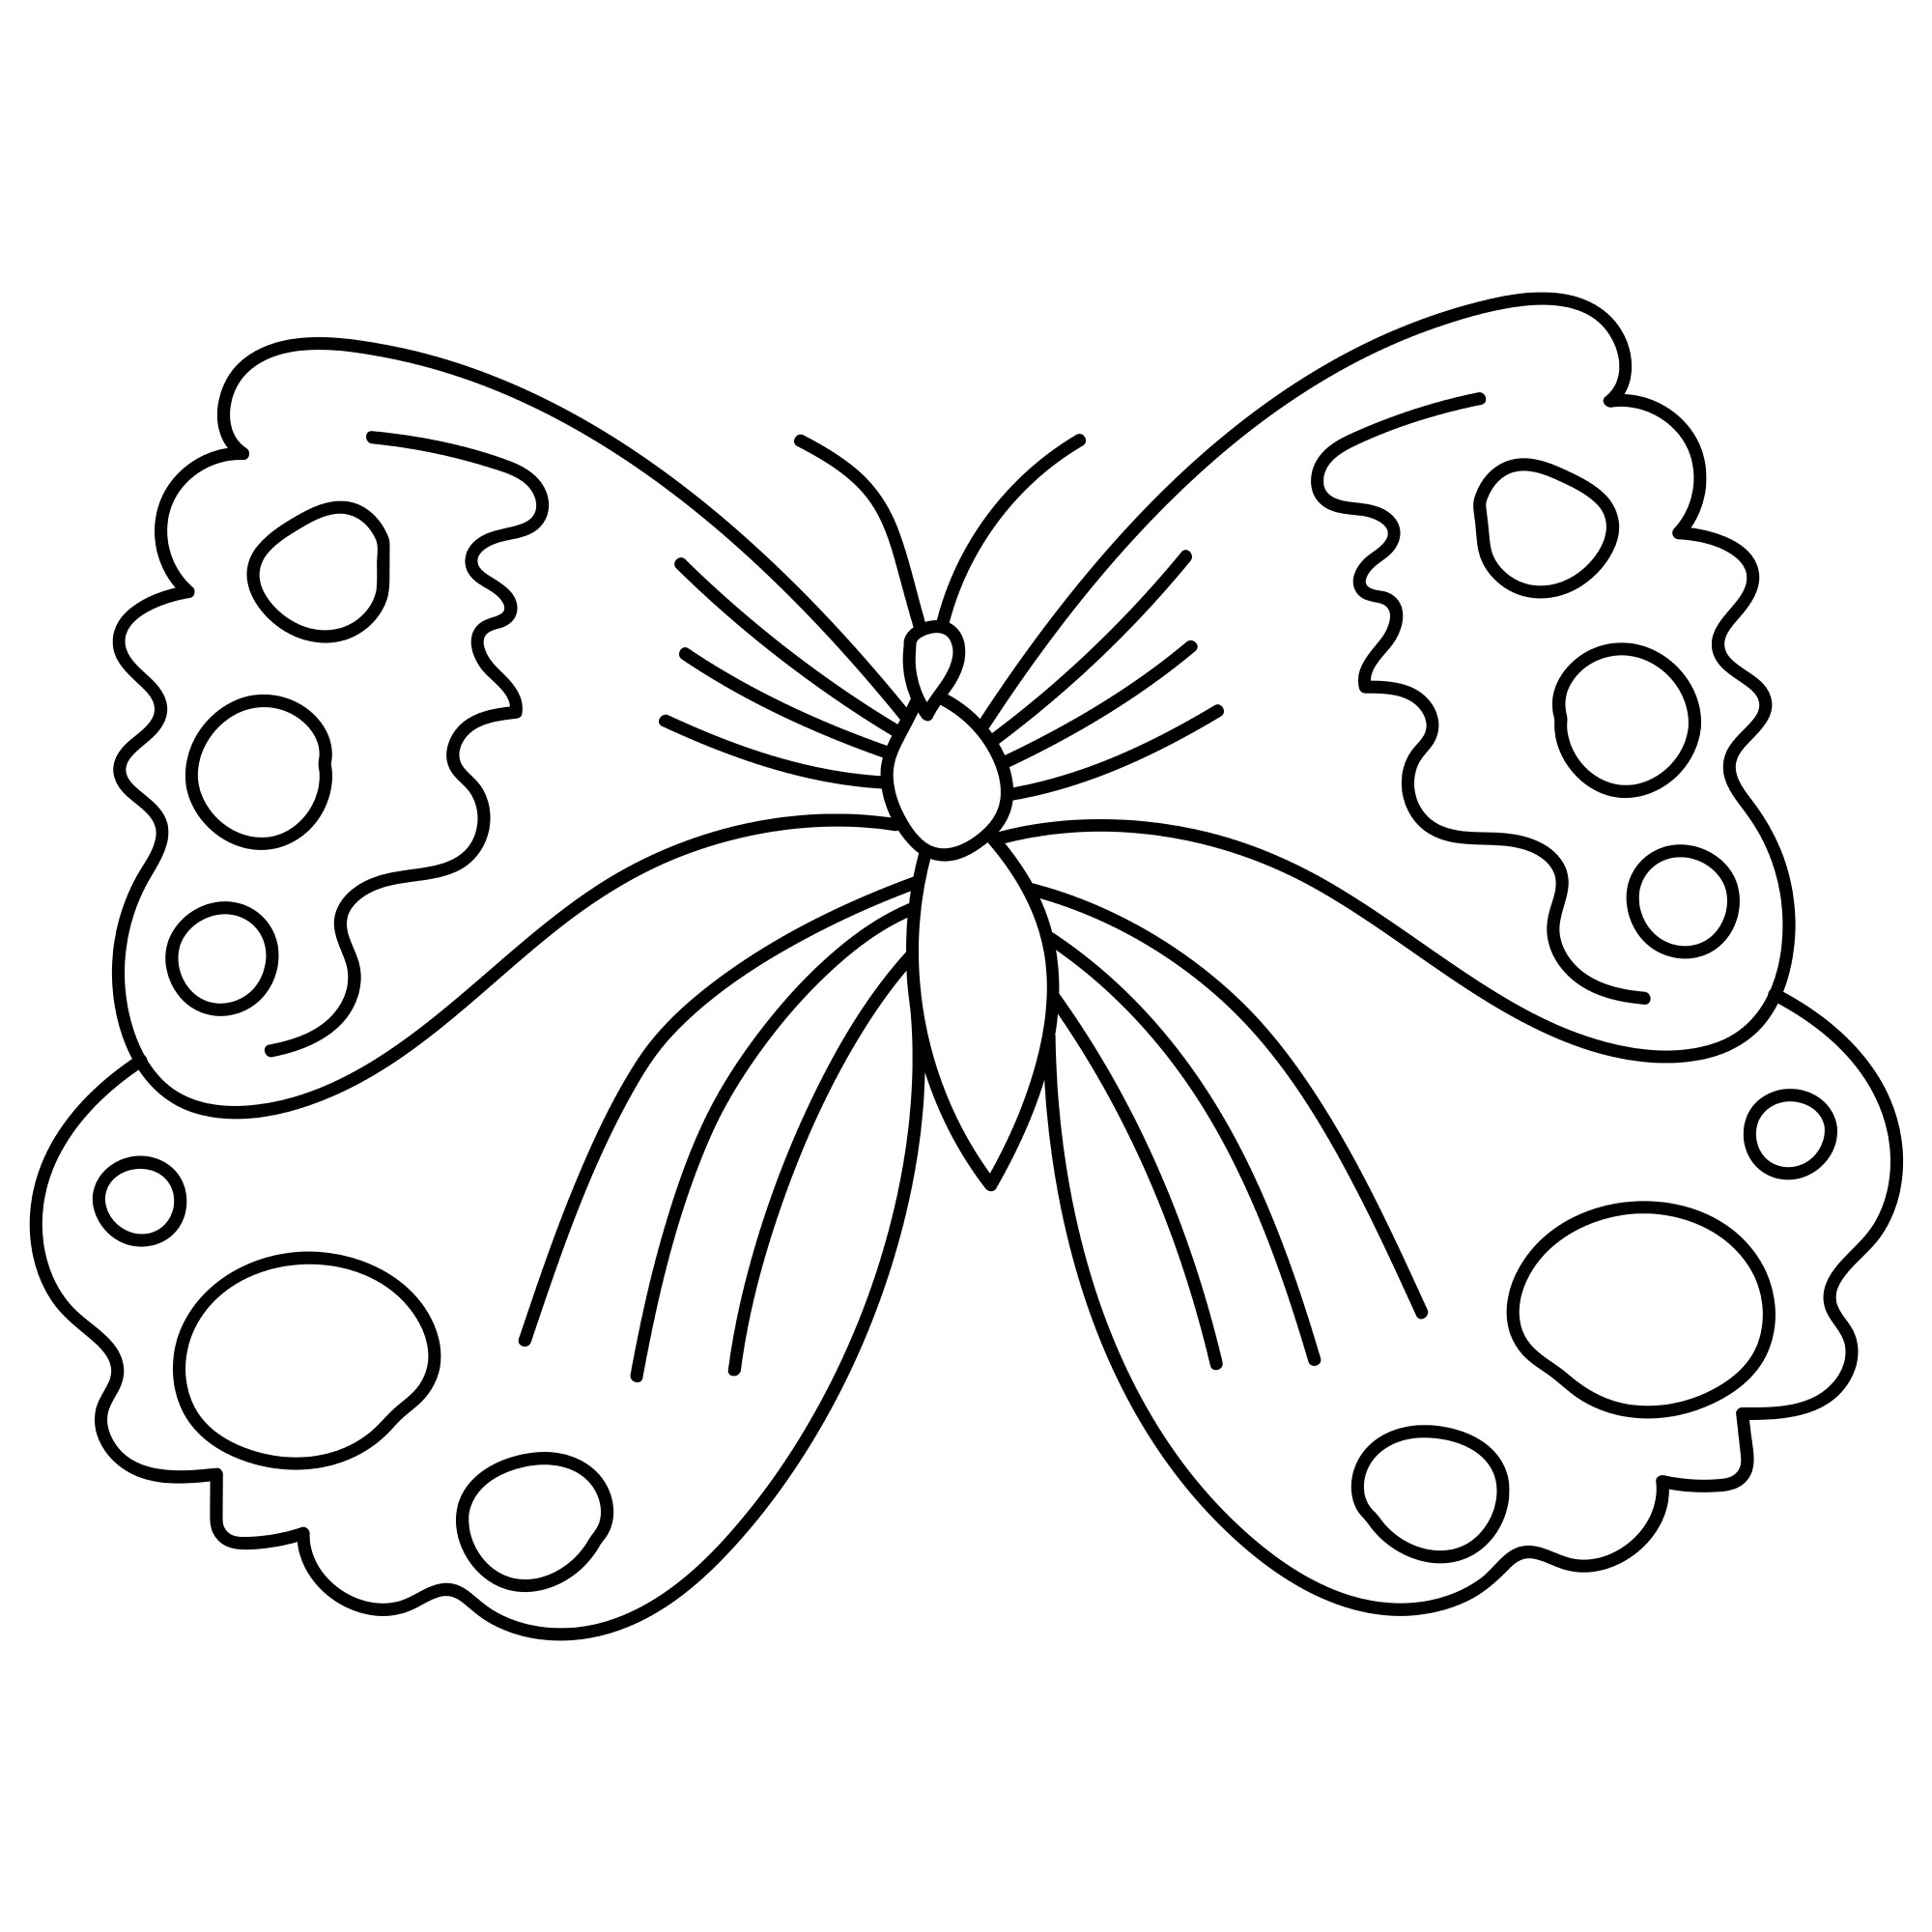 Раскраска для детей: контур бабочка с расправленными крыльями